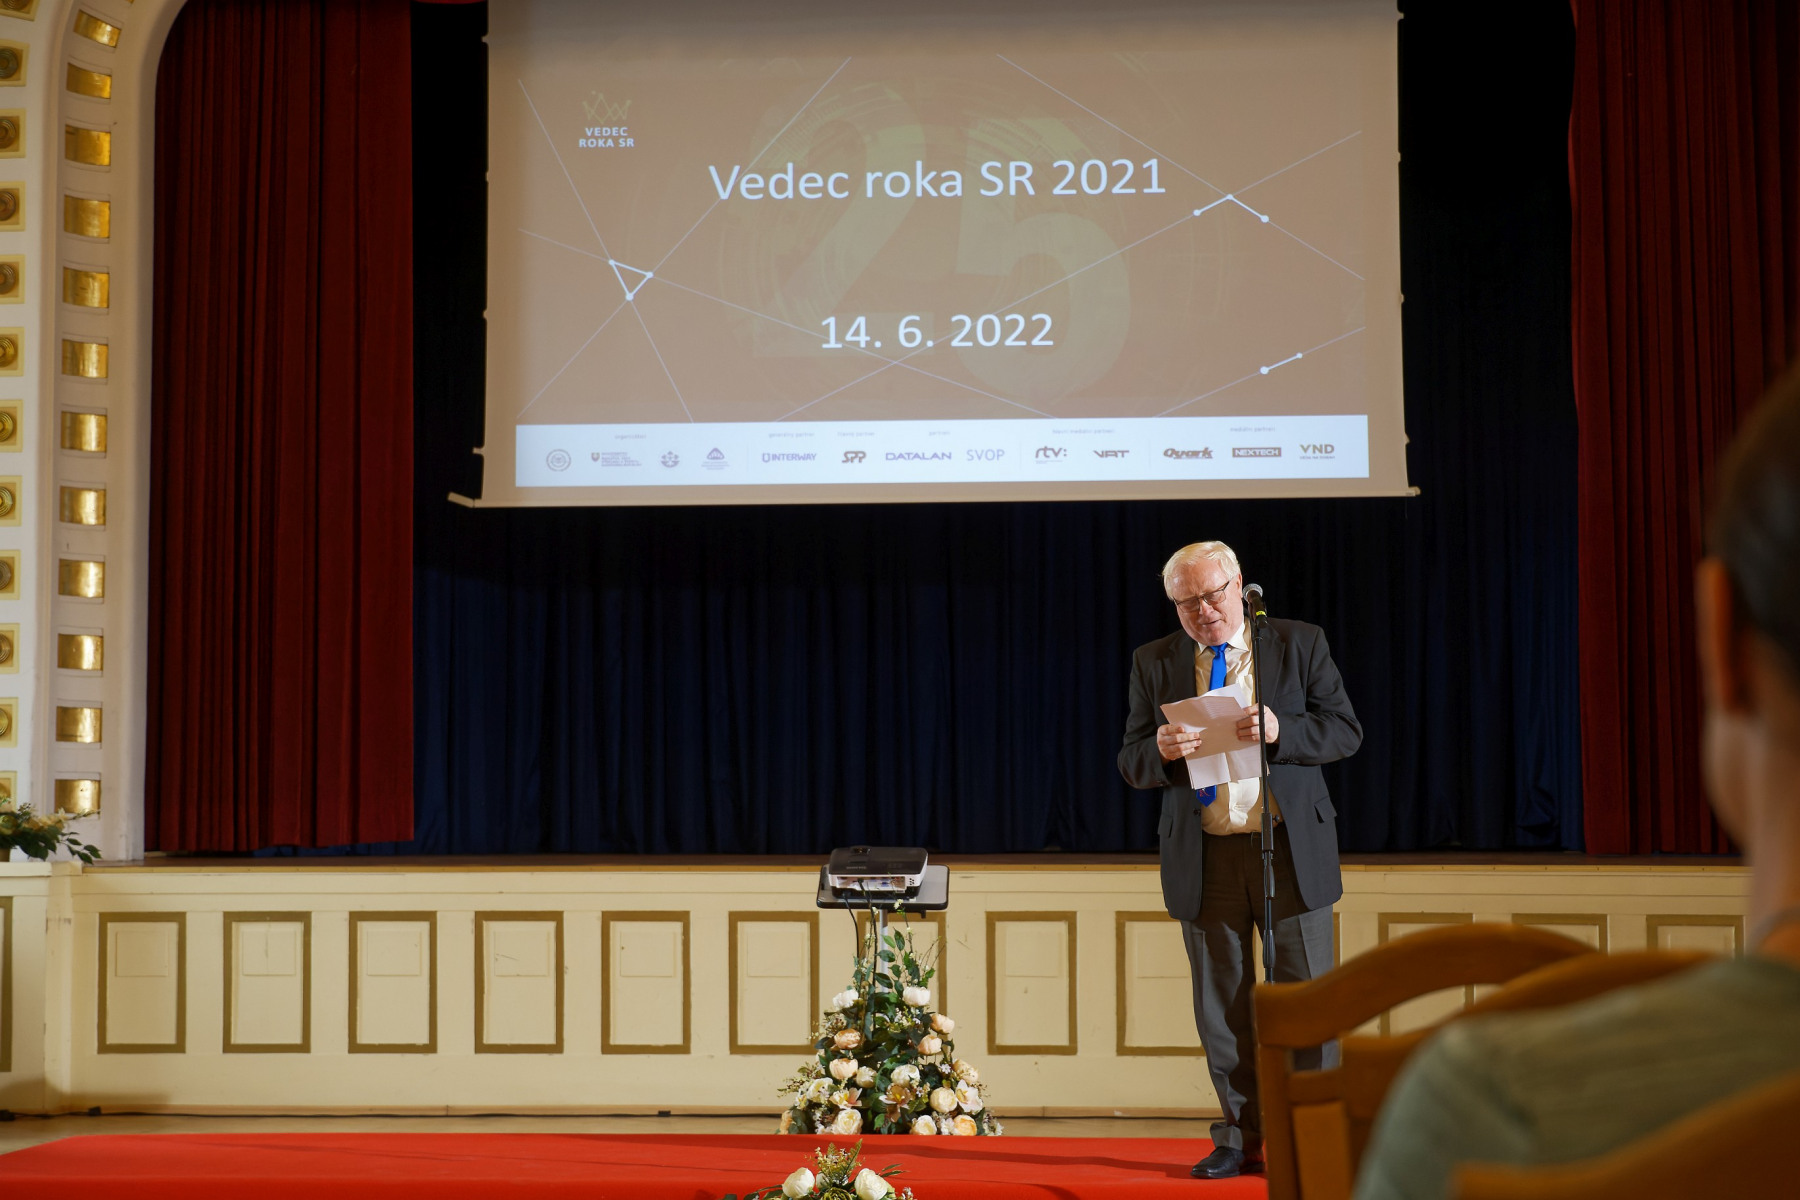 Príhovor predsedu hodnotiacej komisie prof. Jozefa Masarika – Vedec roka SR 2021